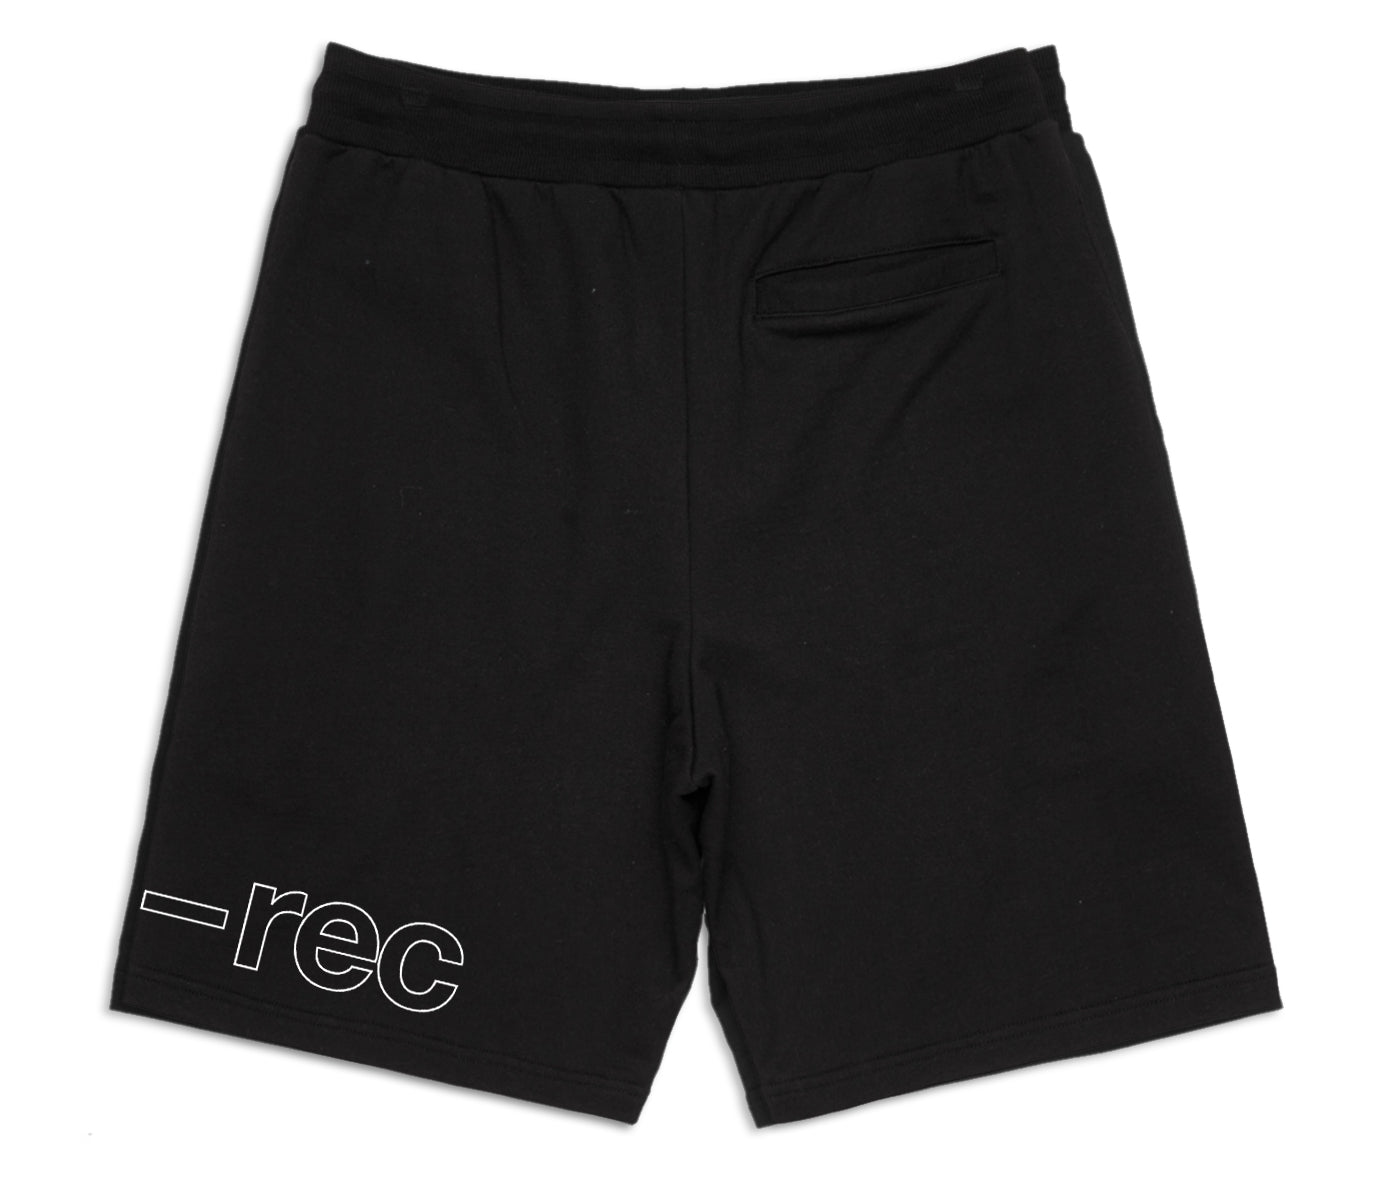 Arts-Rec Outlined Logo Shorts - Black